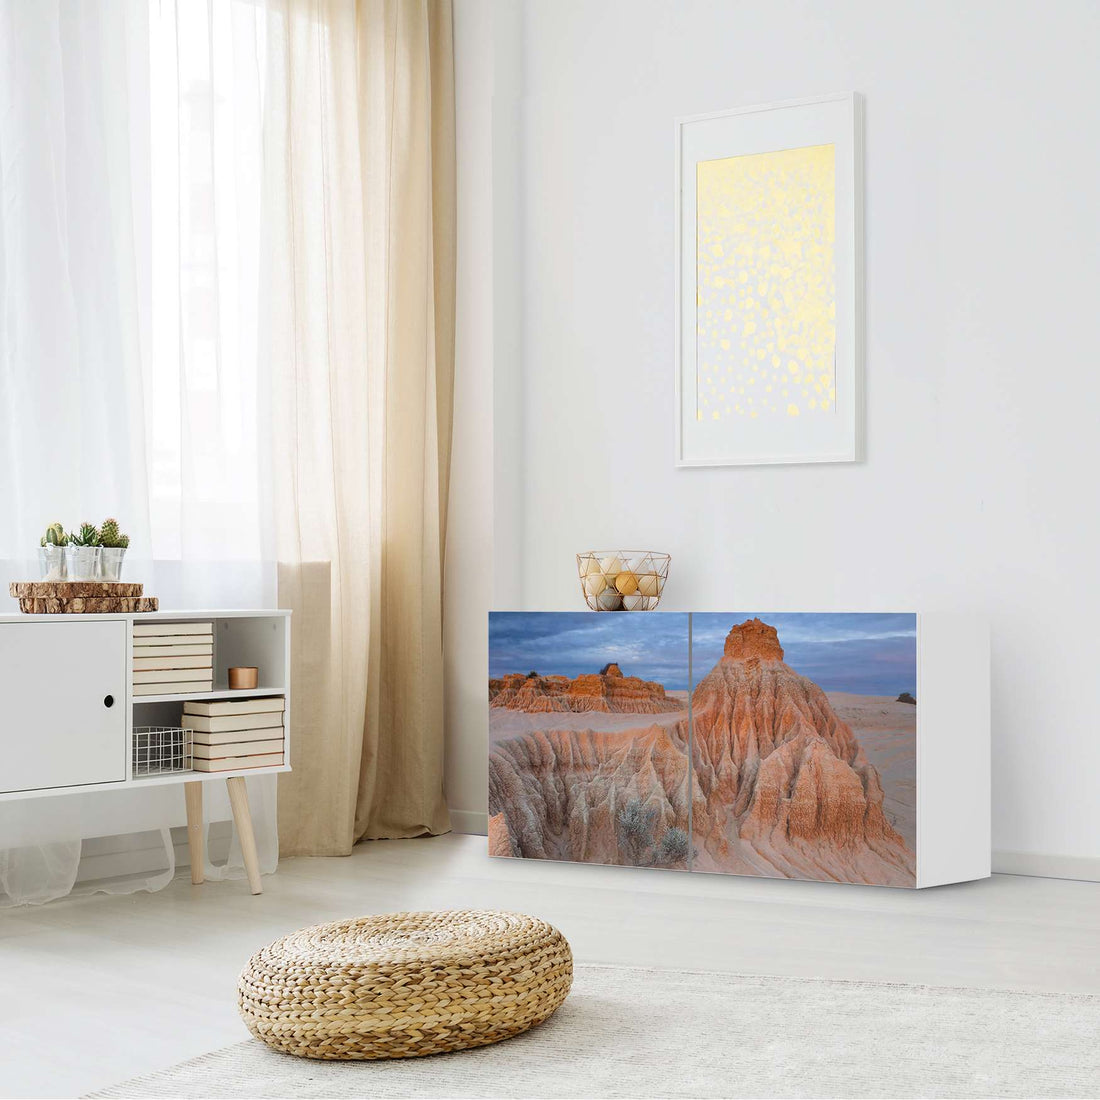 Folie für Möbel Outback Australia - IKEA Besta Regal Quer 2 Türen - Wohnzimmer